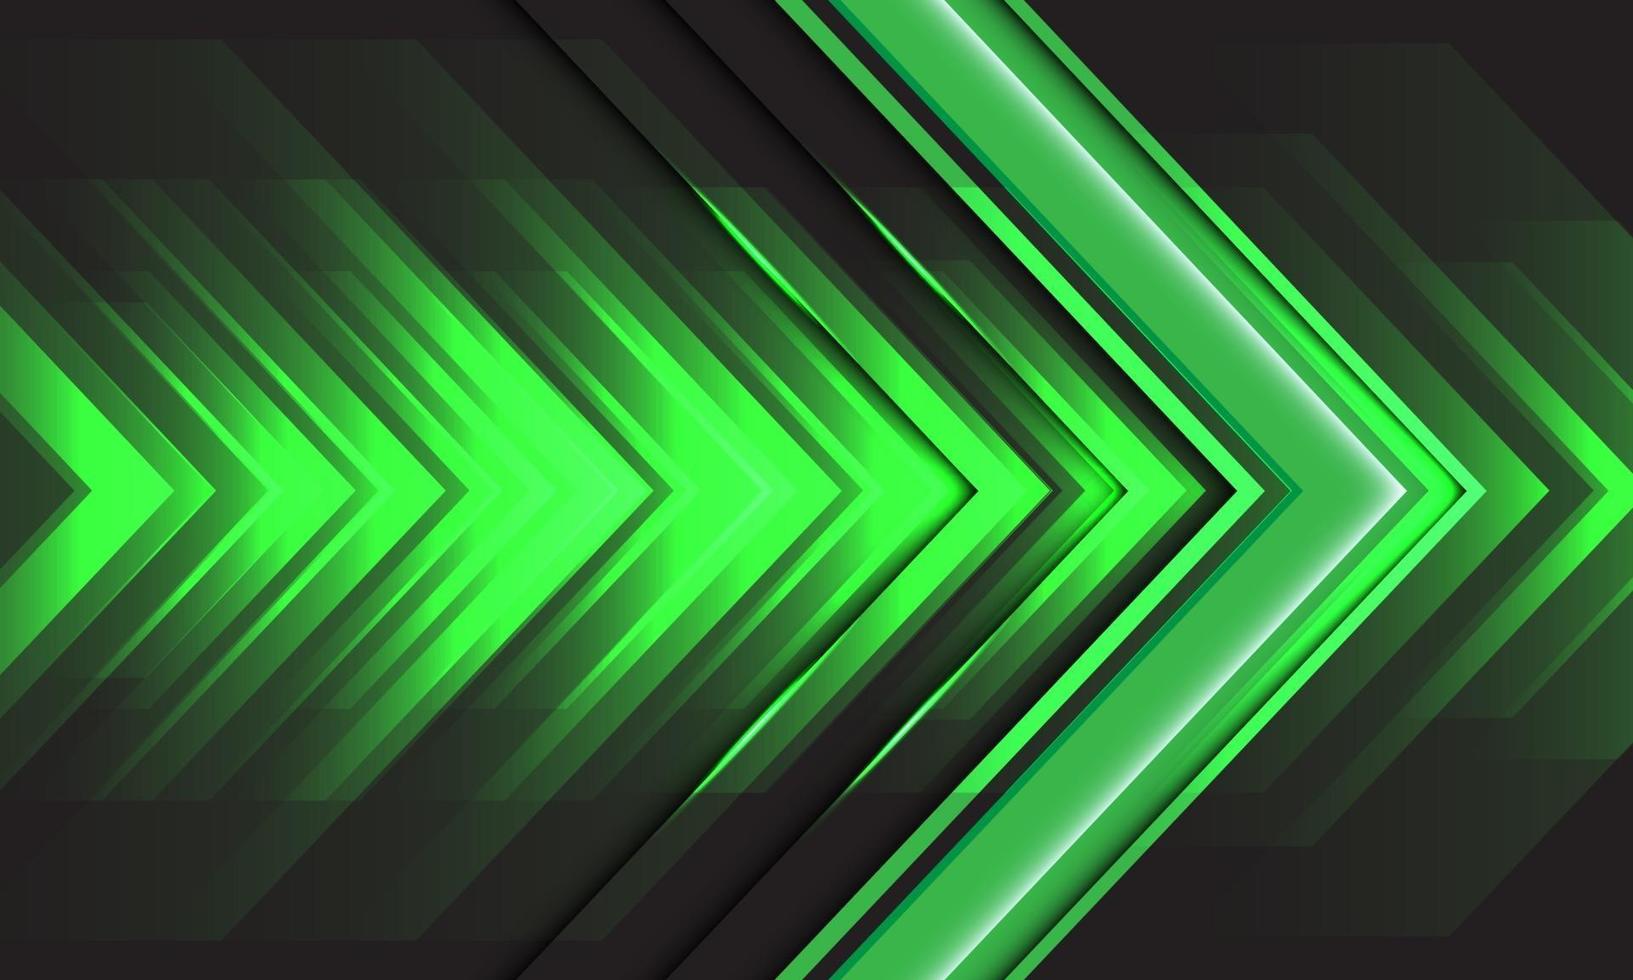 Energía de velocidad de flecha de luz verde abstracta en diseño negro ilustración de vector de tecnología de fondo futurista moderno.